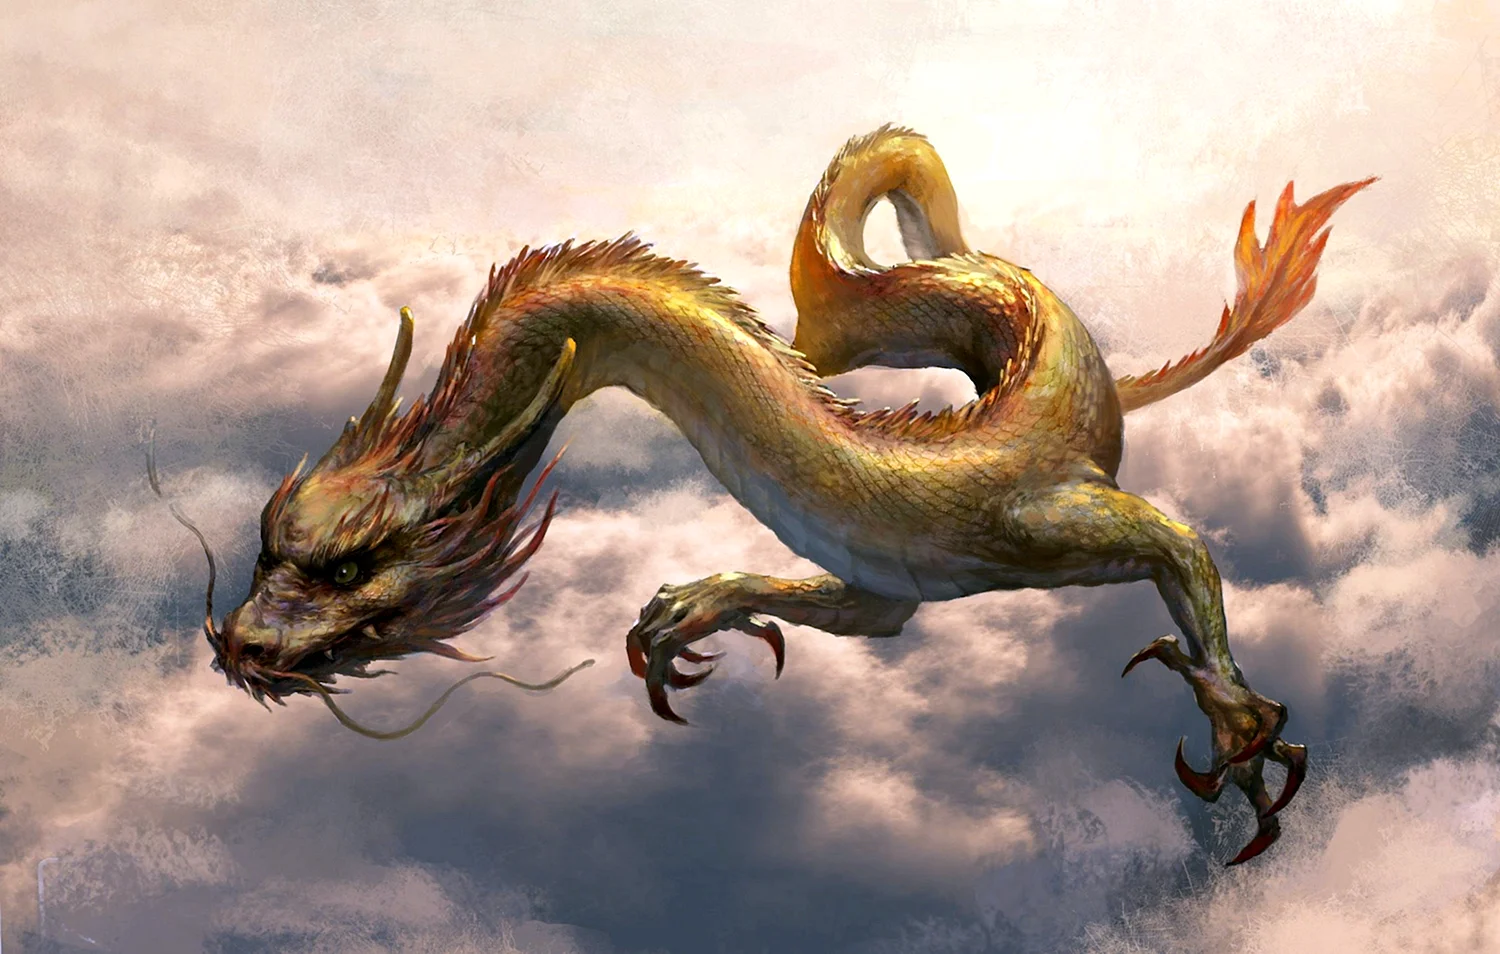 Змеевидный дракон